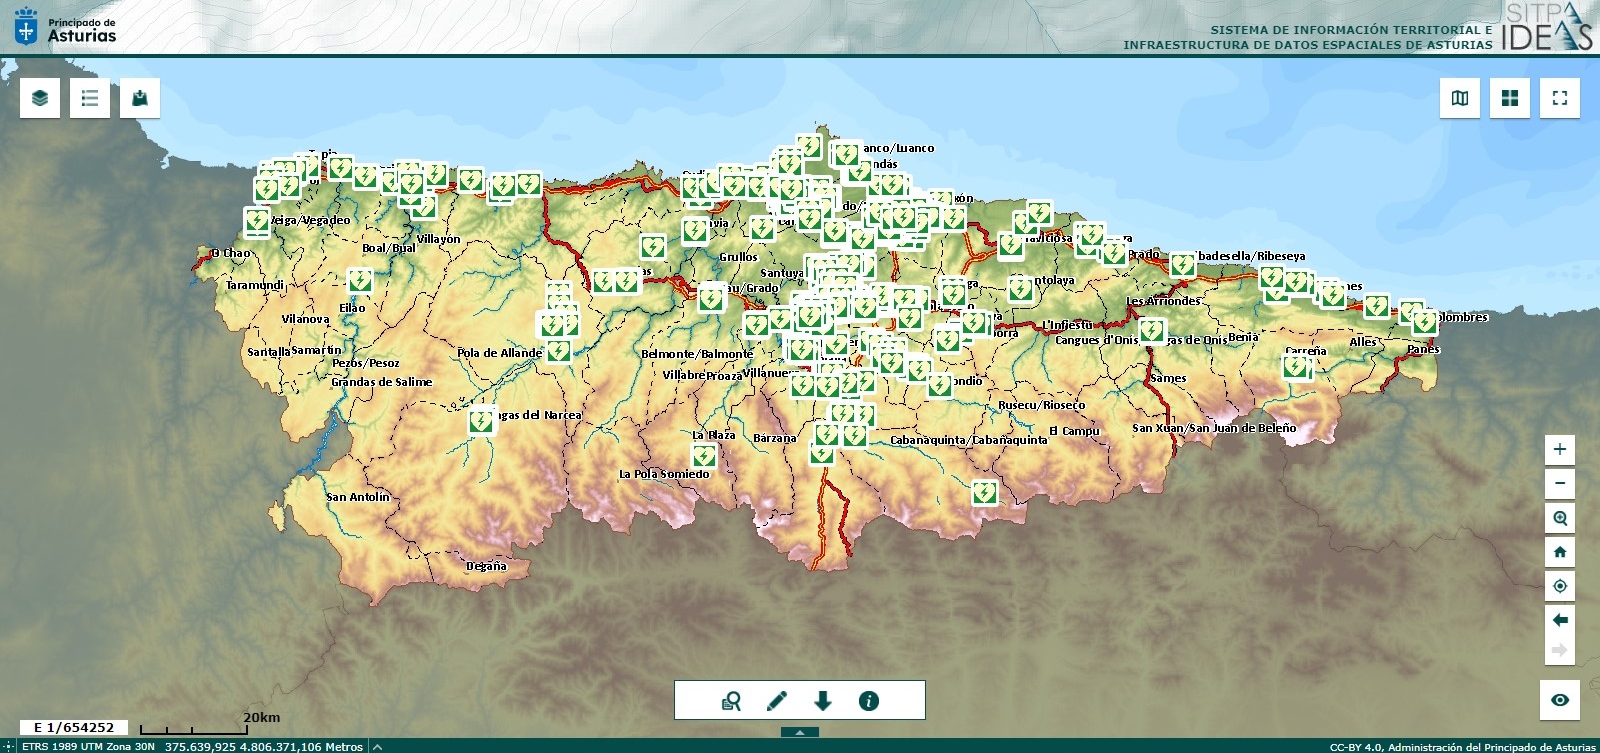 Imagen - Salud publica un mapa digital con la distribución geográfica de los desfibriladores ubicados fuera del ámbito sanitario